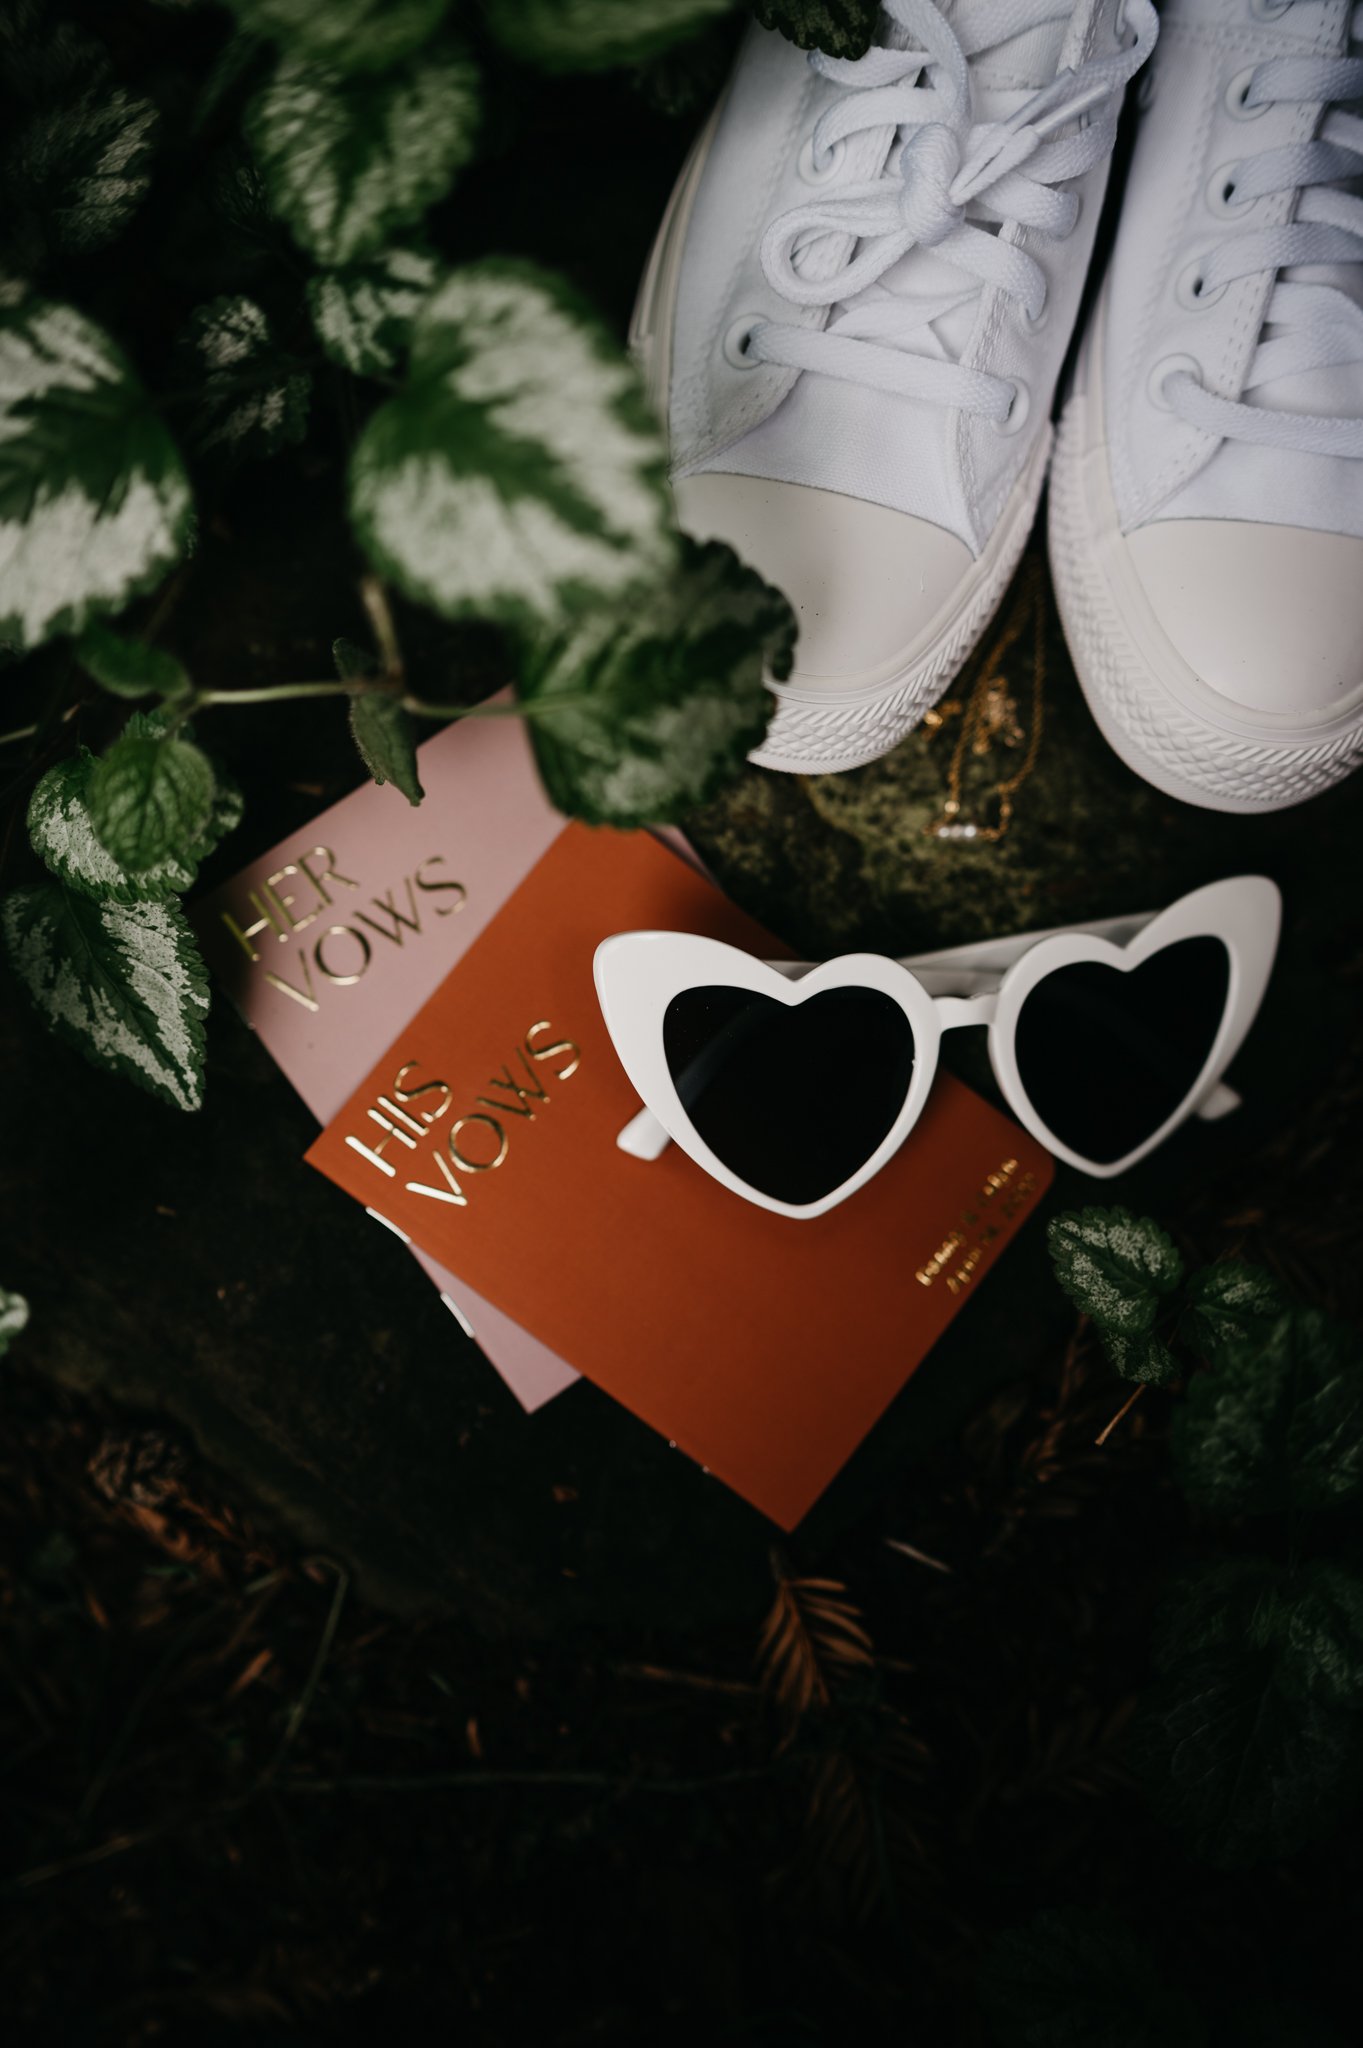 Glen Oaks elopement details bridal shoes vow books sungalsses and flowers